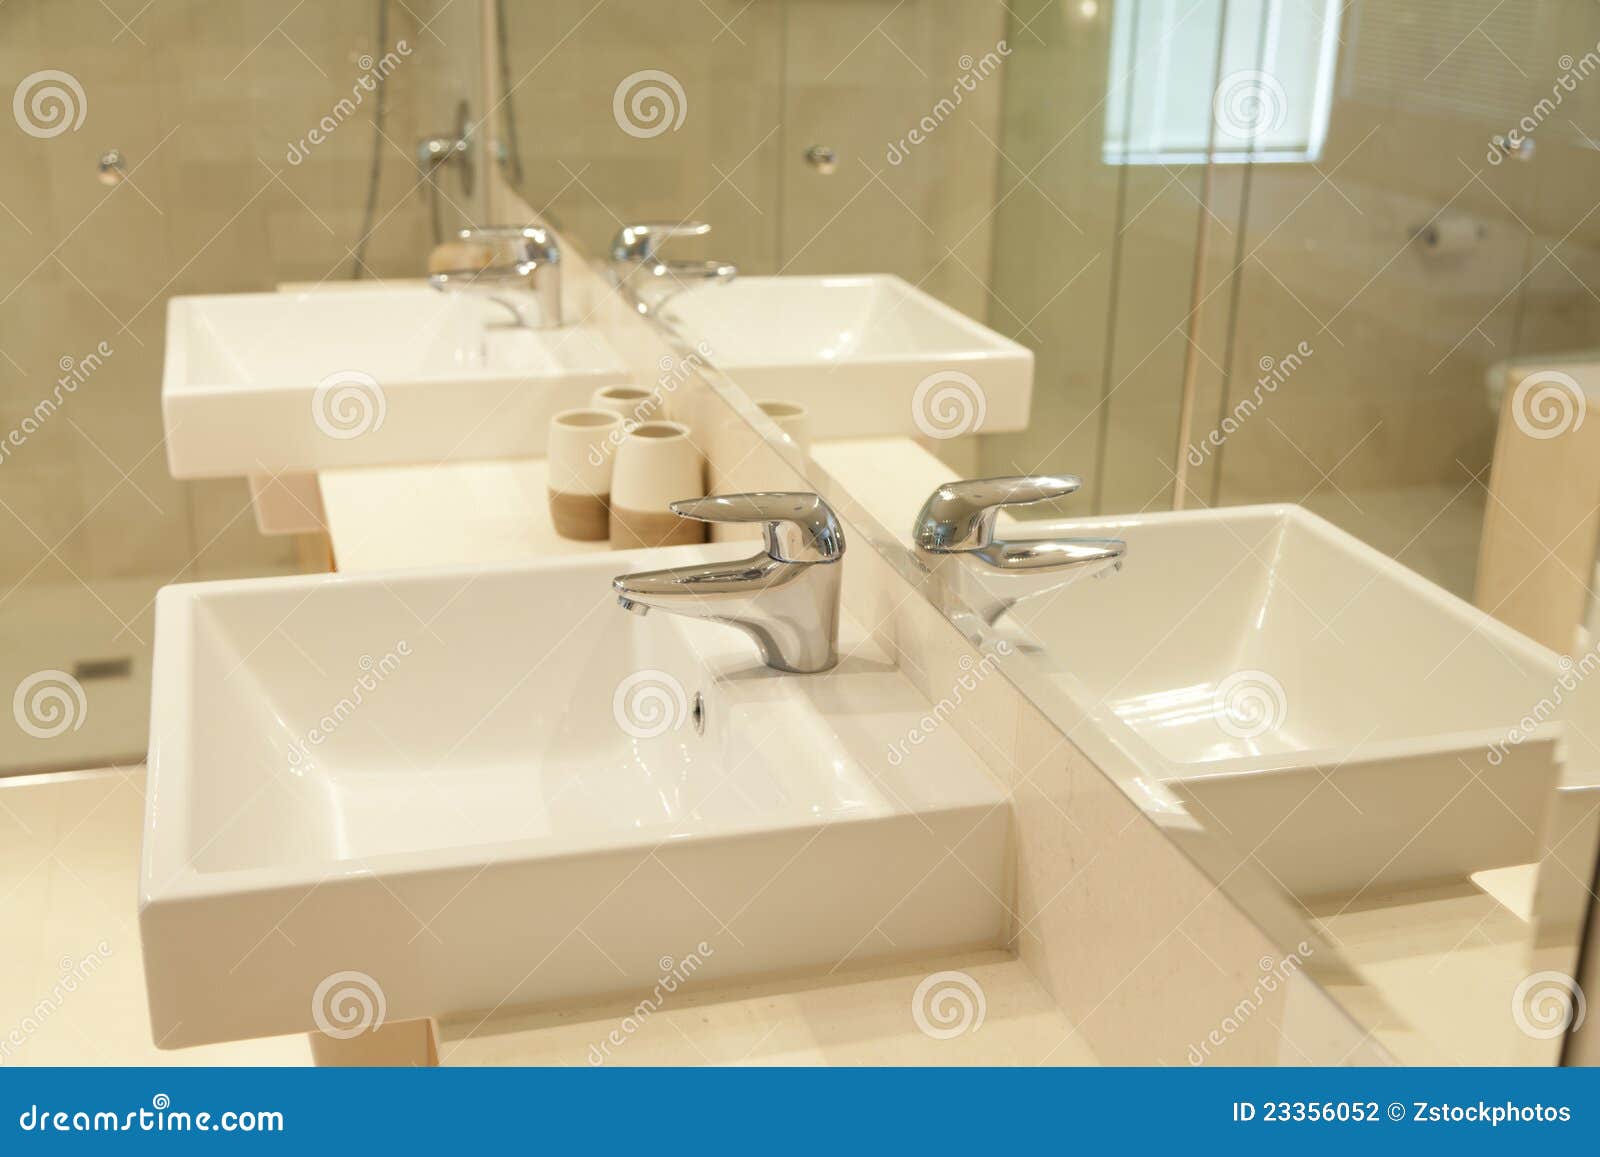 Twin Bathroom Sinks Stock Photography - Image: 23356052